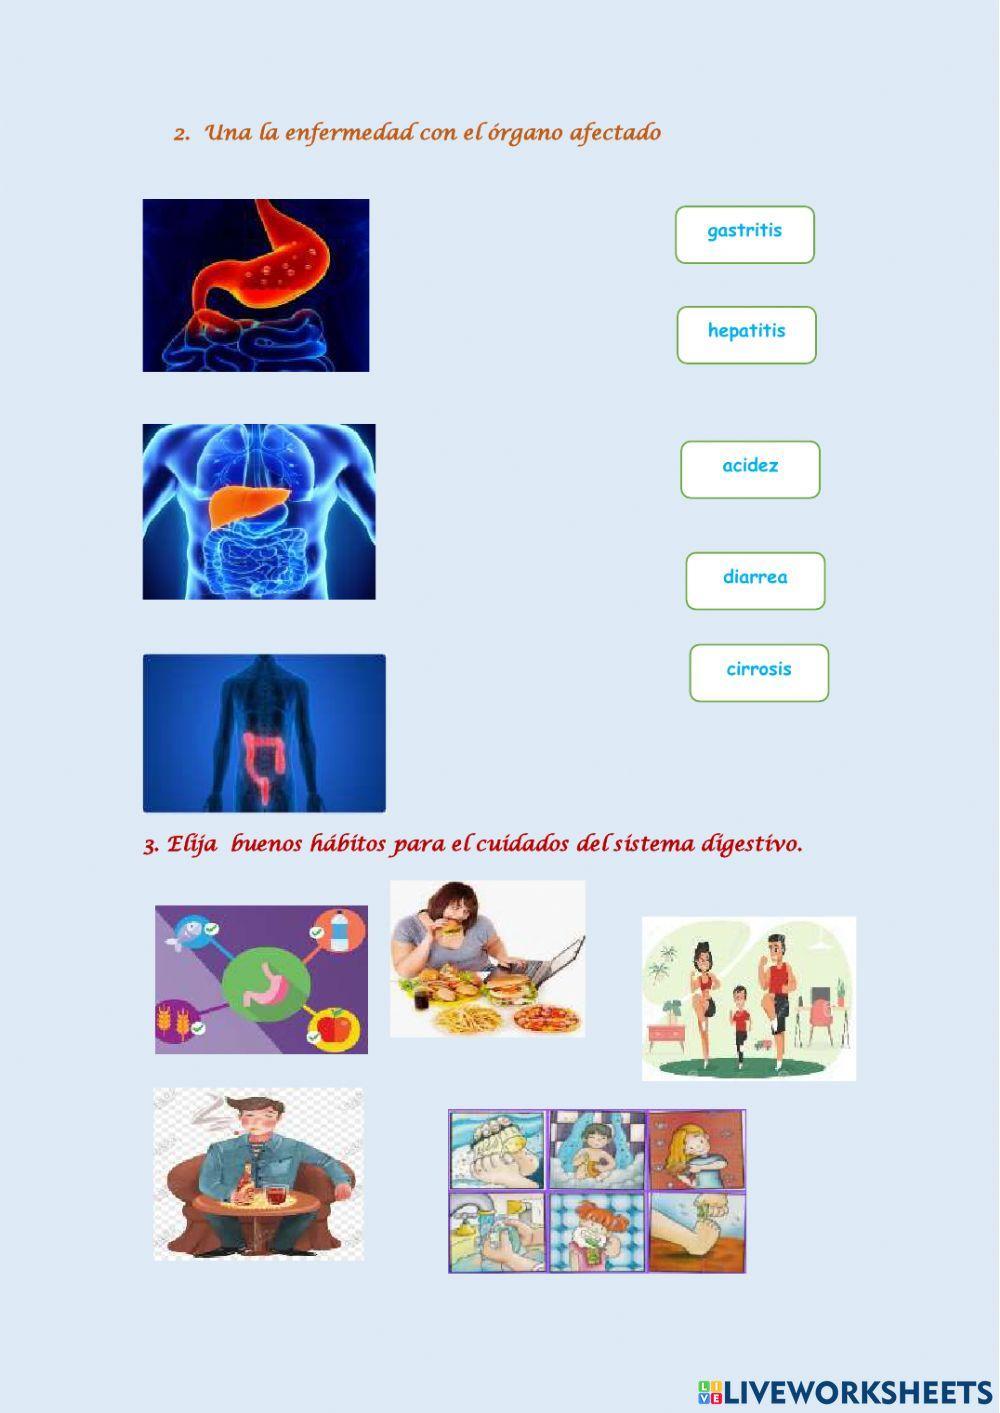 Enfermedades y cuidados del sistema digestivo